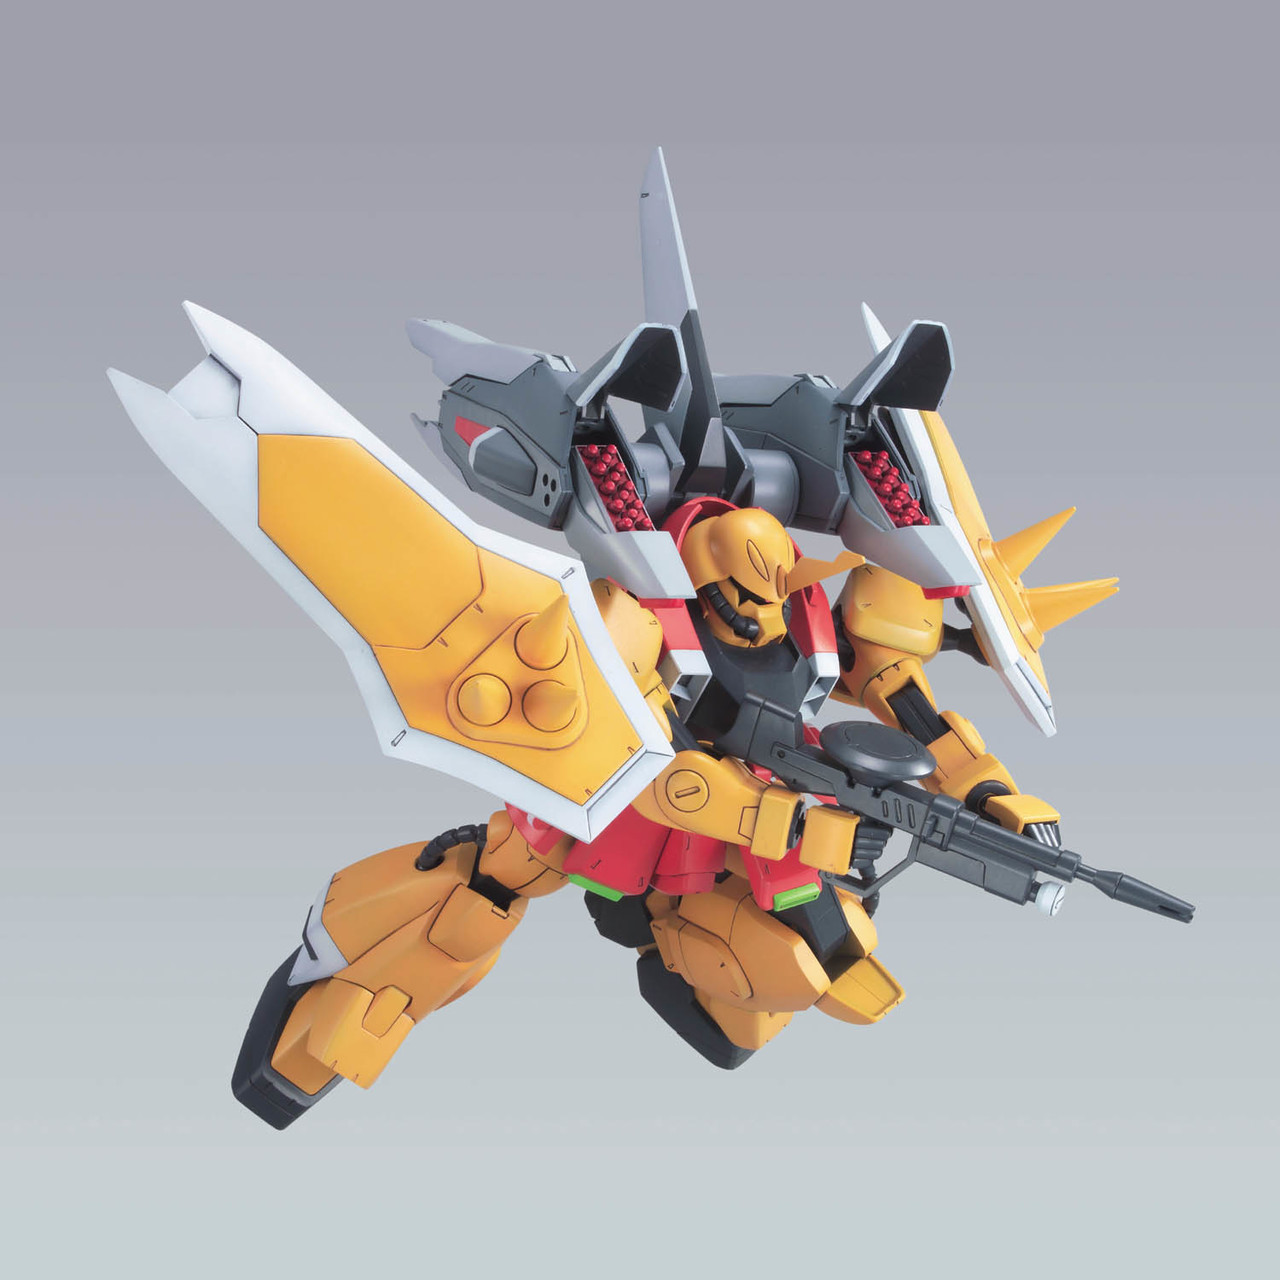 Zgmf 1001 M Blaze Zaku Phantom Heine Westenfluss Custom Gundam Seed Destiny 1 100 Model Kit Gsd 007 Toysdiva